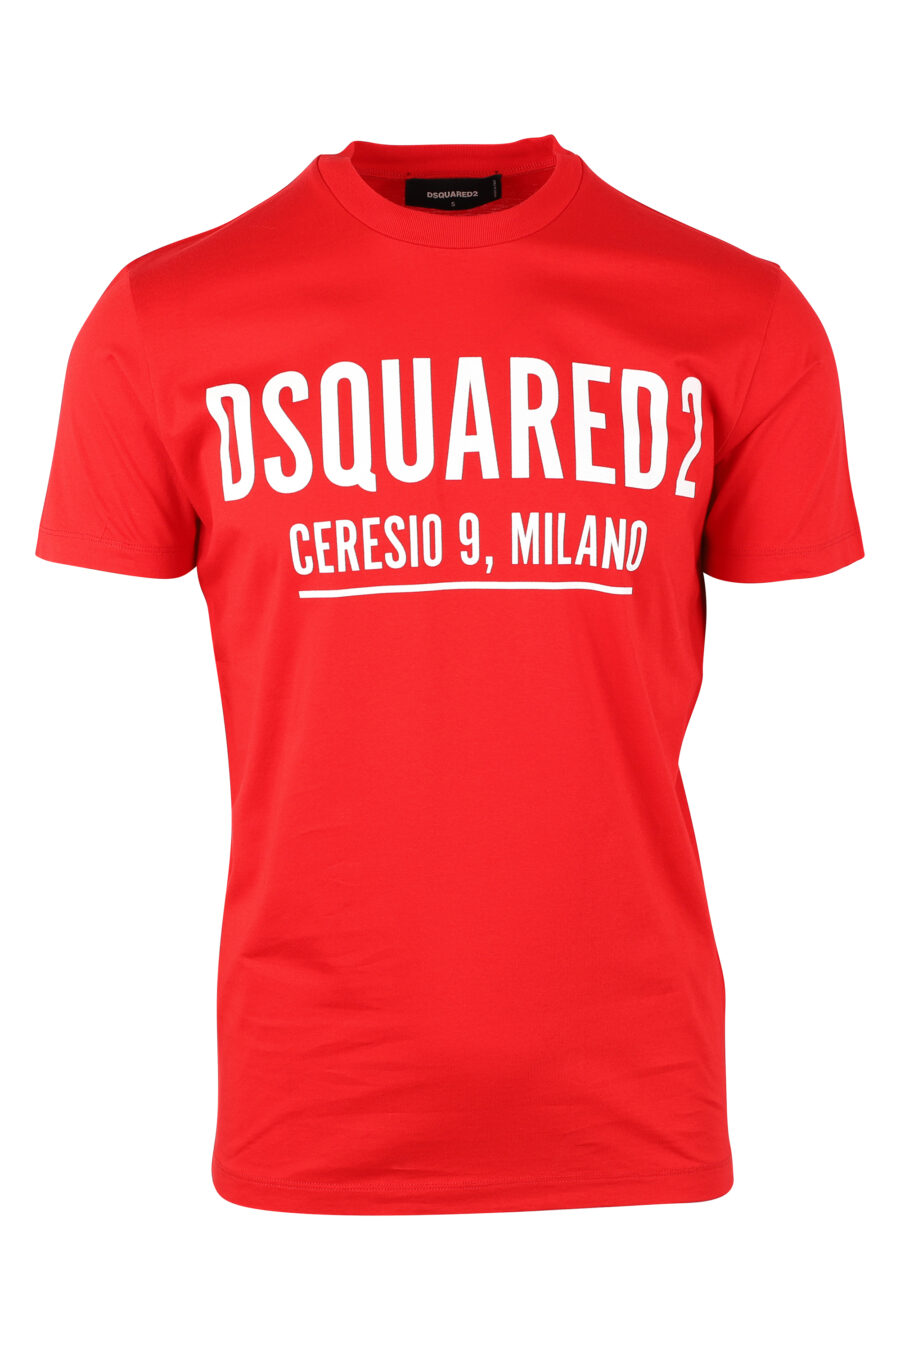 T-shirt rouge avec maxilogo "ceresio 9" - IMG 9750